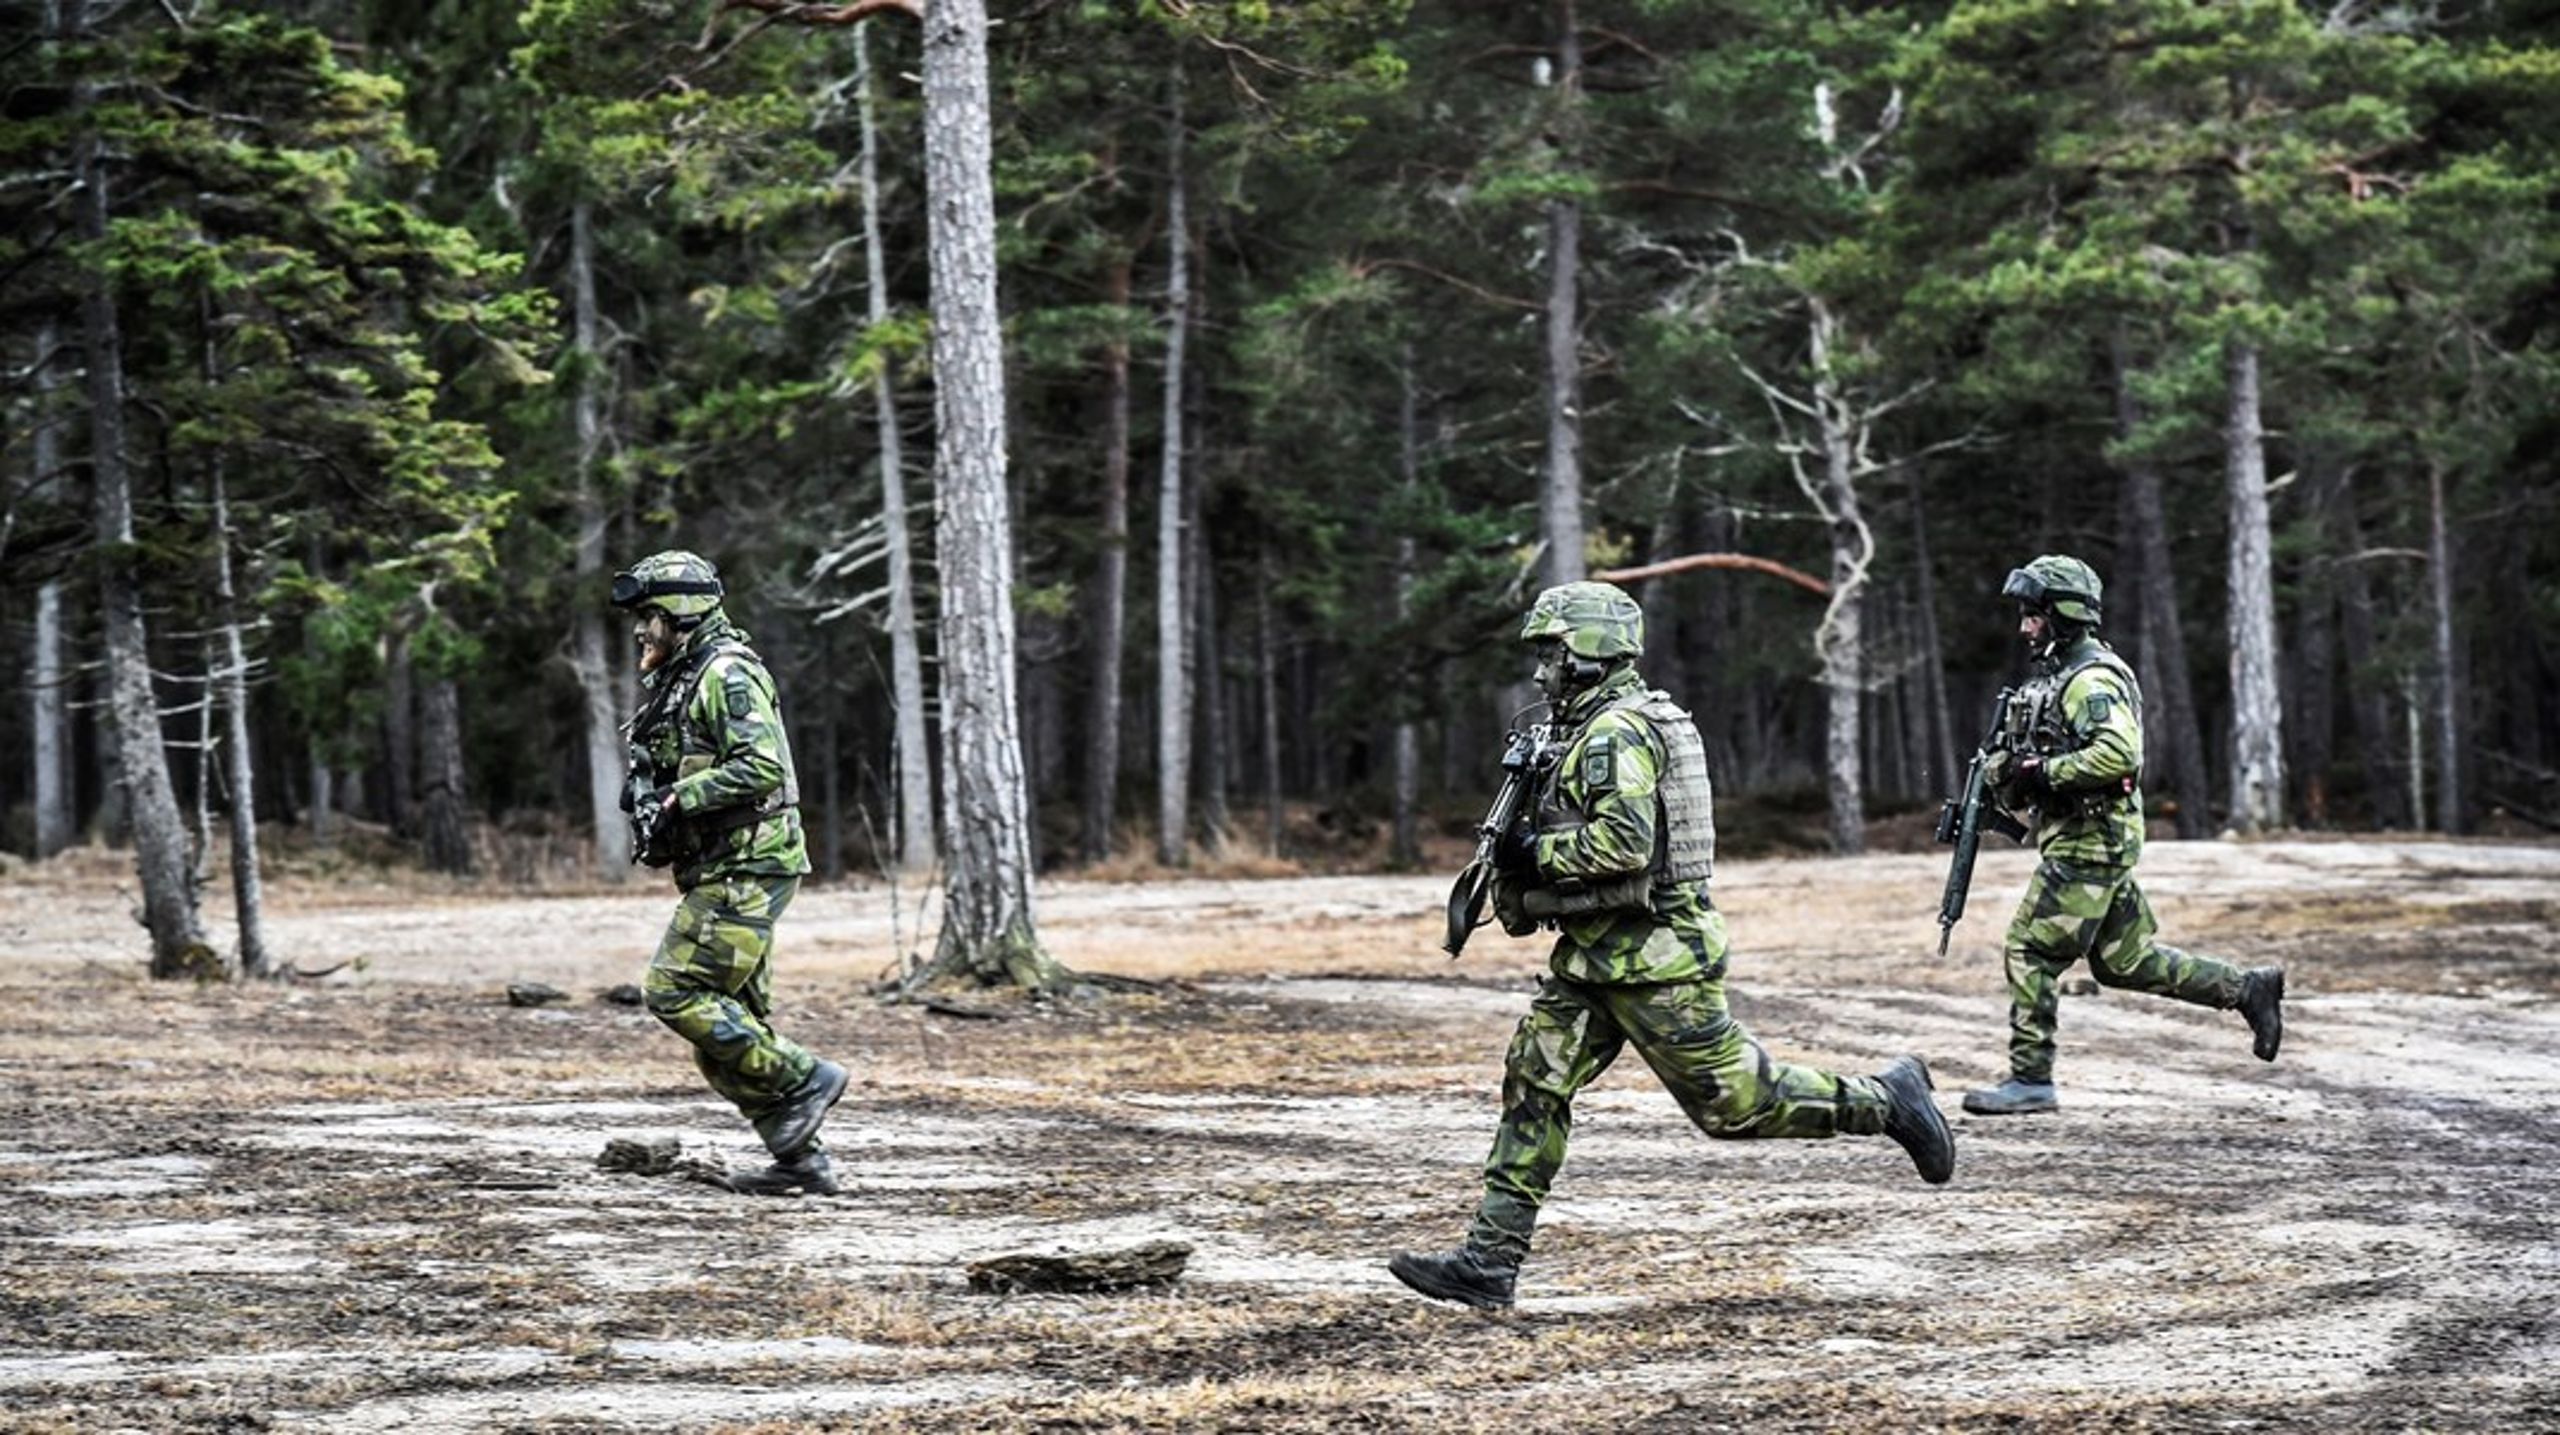 Försvarsmakten behöver tillgång till naturen. Det ska Miljömålsberedningen ta hänsyn till i sitt nya uppdrag. Övning på Tofta skjutfält, Gotland.